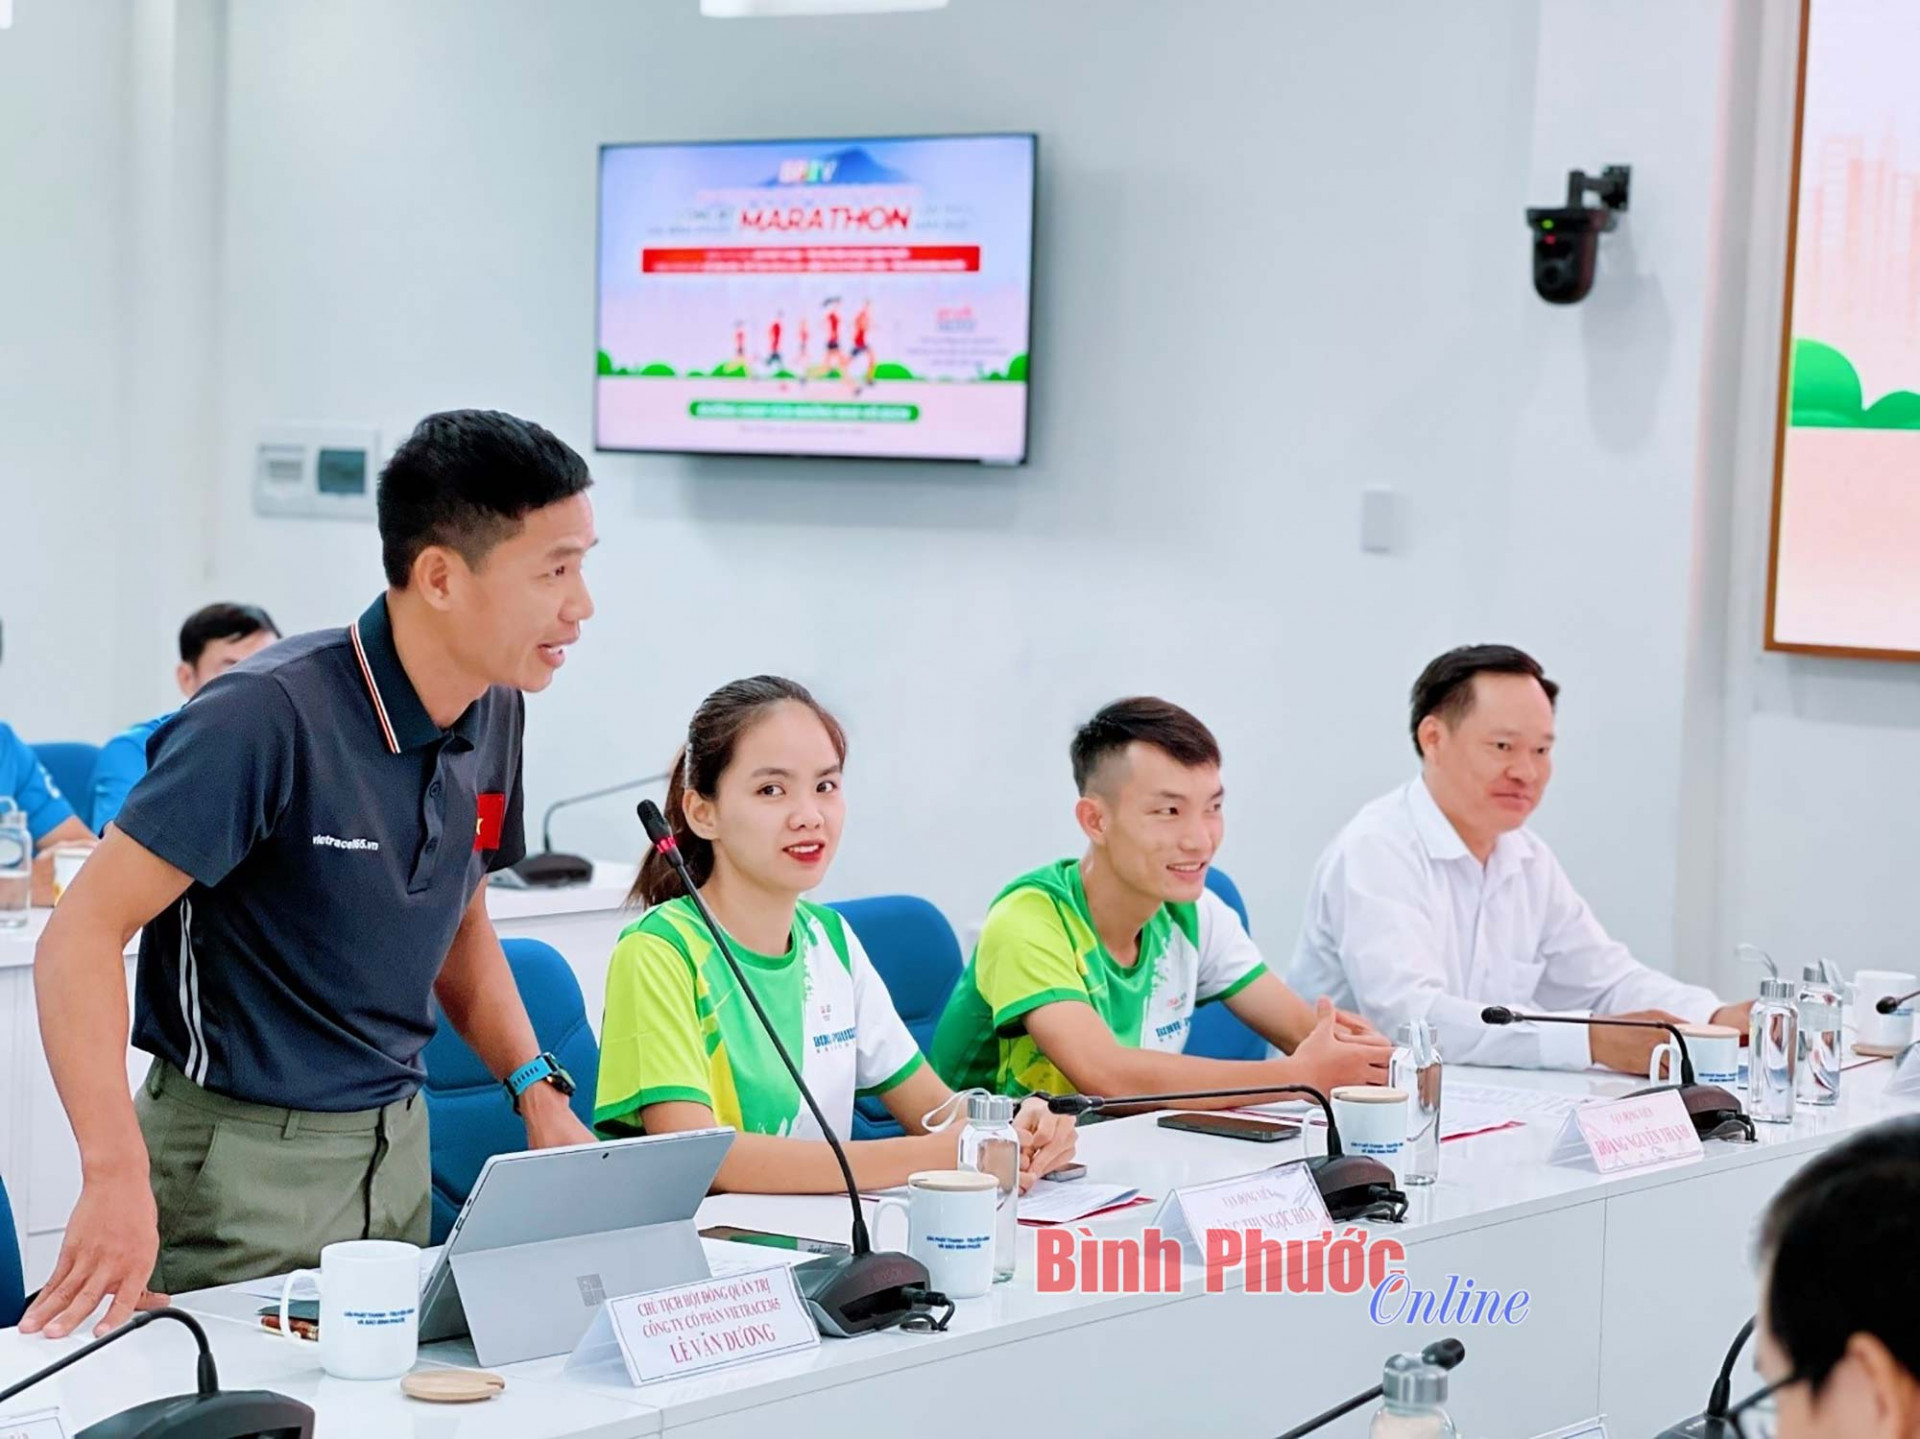 Ông Lê Văn Dương, Chủ tịch Hội đồng quản trị Công ty cổ phần Vietrace365 - đơn vị phối hợp tổ chức giải công bố sơ lược những thông tin chuyên môn của giải 

